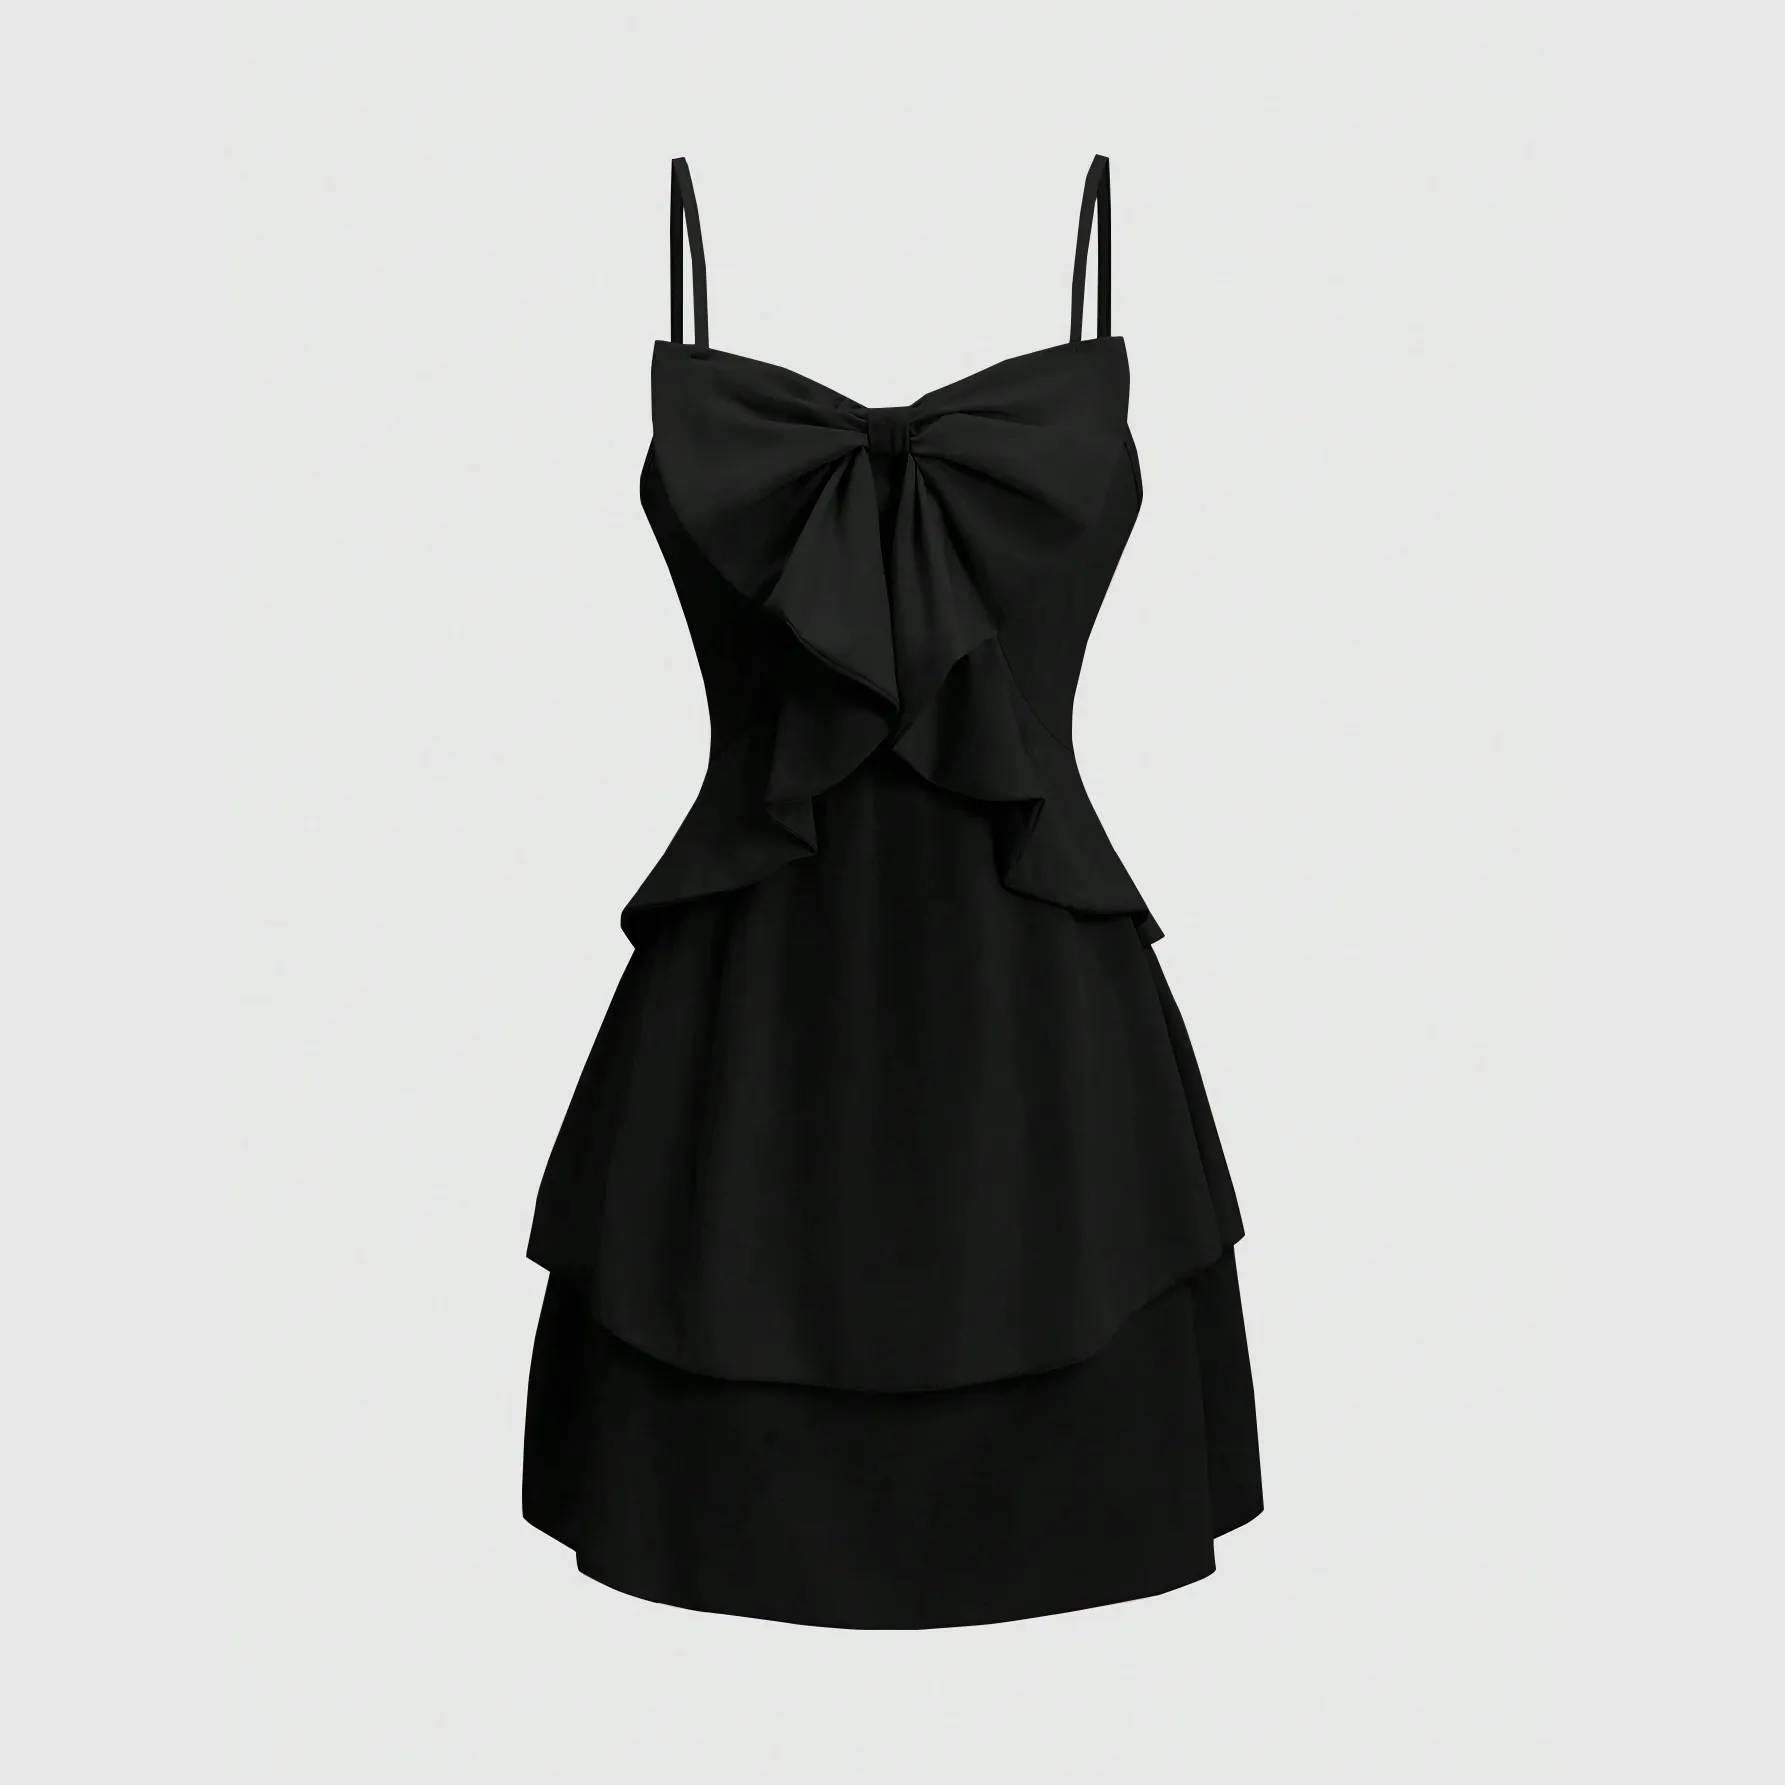 Yaz yeni tasarım sapan v yaka fırfır etekli düzensiz Hem elbise bayanlar rahat sokak giyim Mini Sling düz renk elbise